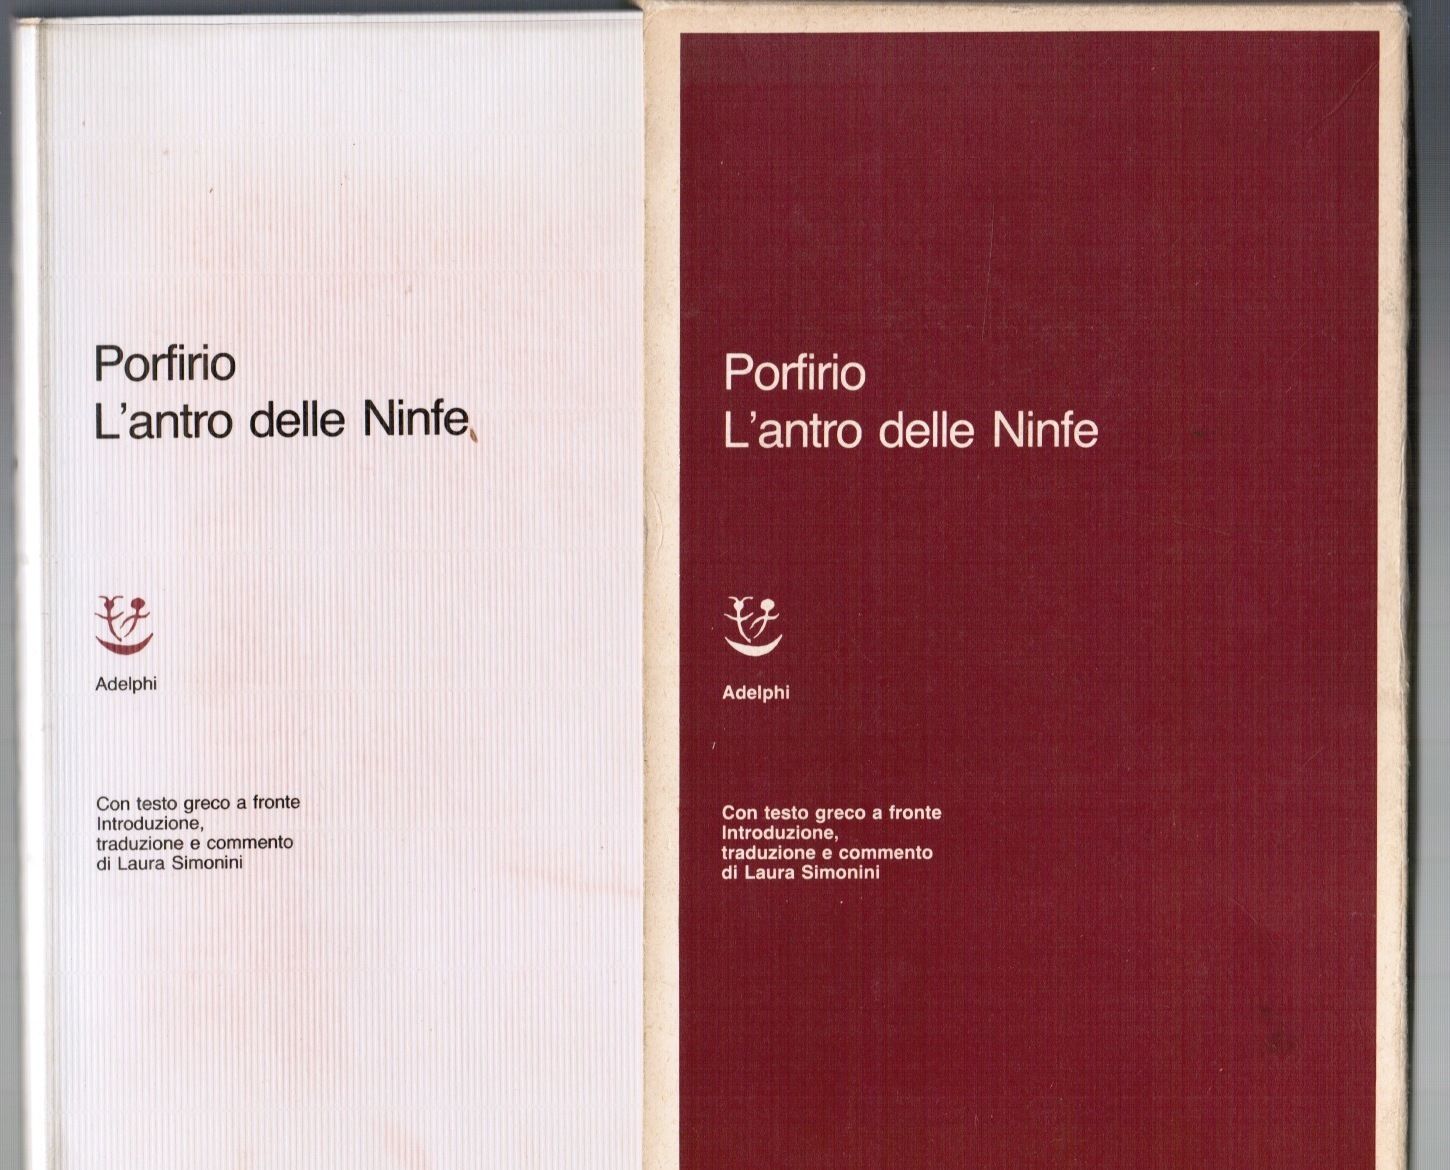 L’antro delle Ninfe di Porfirio – Prima edizione Adelphi 1986 – Con il testo integrale tradotto da Laura Simonini